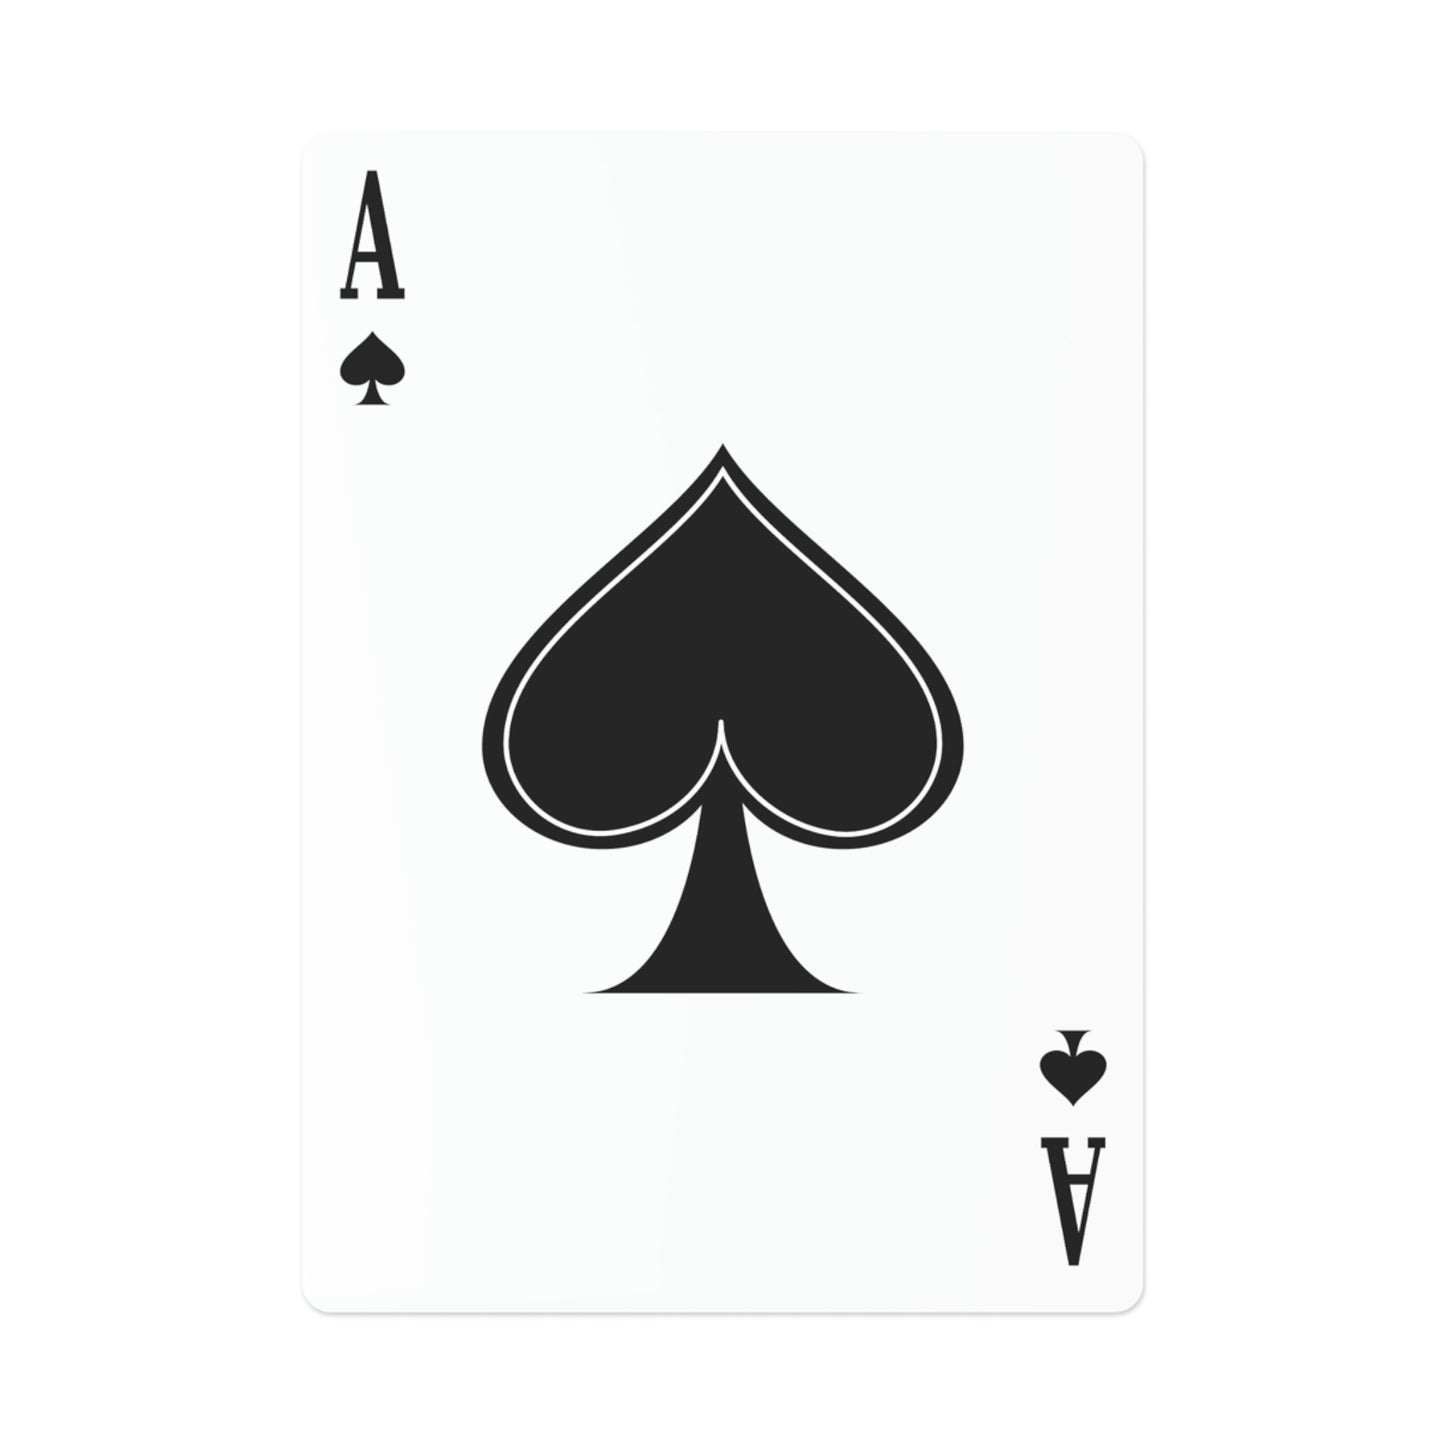 A Barrow Boy's Cadenza - Playing Cards